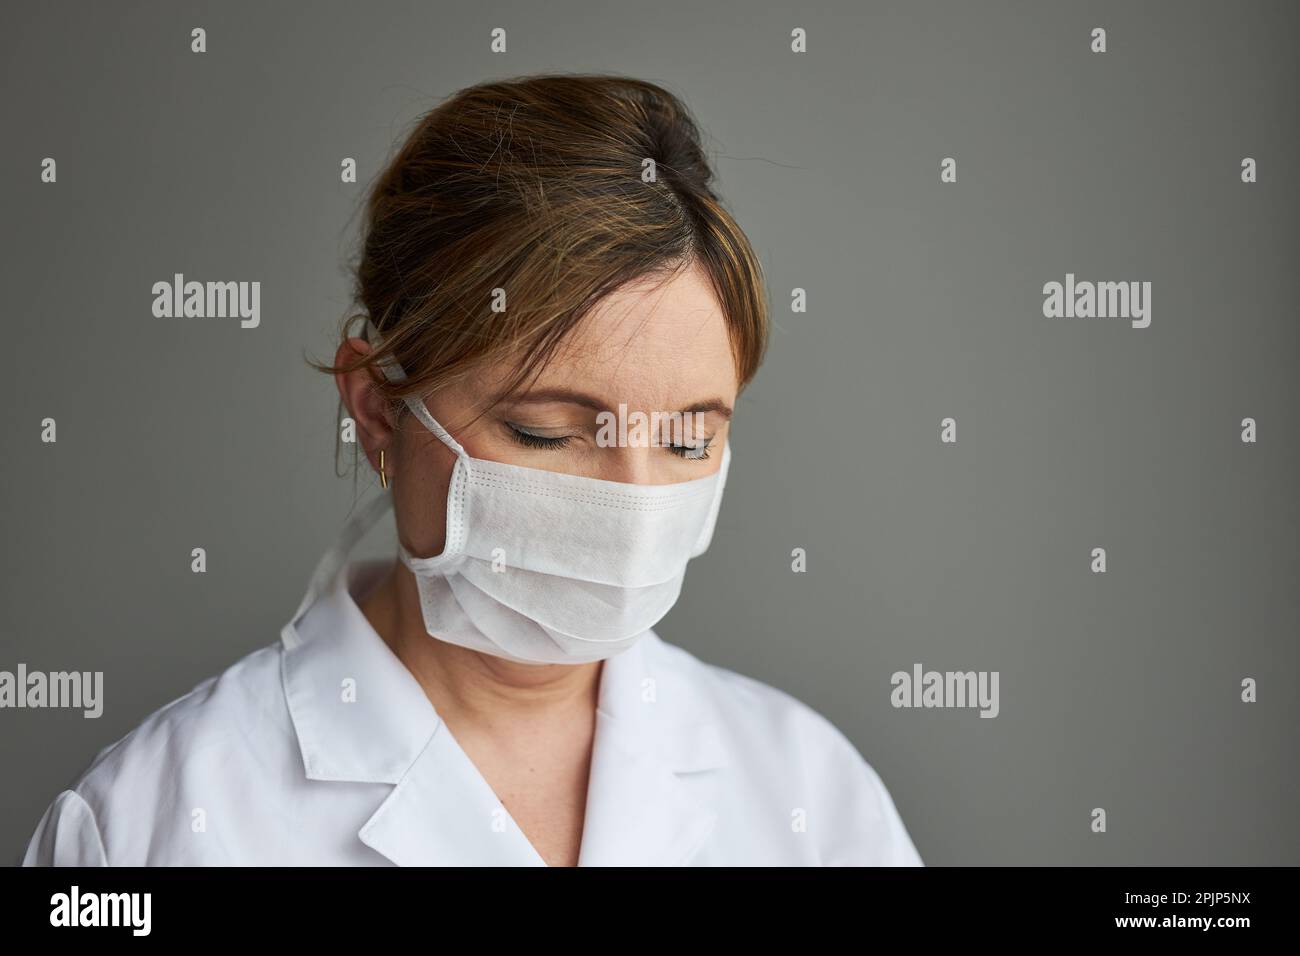 Medico con il viso coperto di maschera. Ritratto della giovane donna che indossa l'uniforme e la maschera per evitare l'infezione da virus e per prevenire la diffusione della malattia Foto Stock